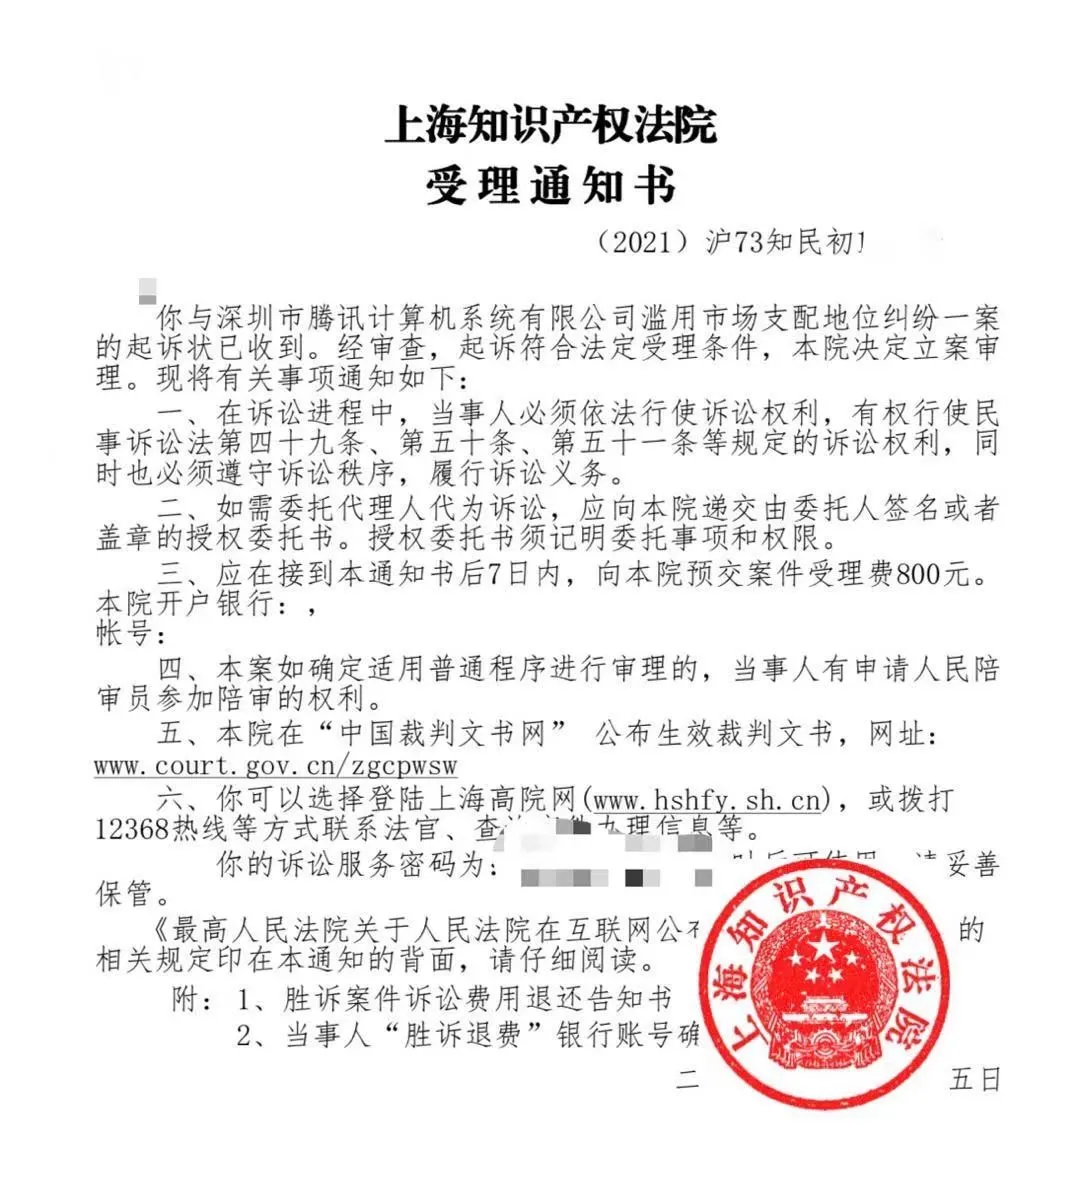  屏蔽侵犯用户利益 上海法院受理腾讯垄断案